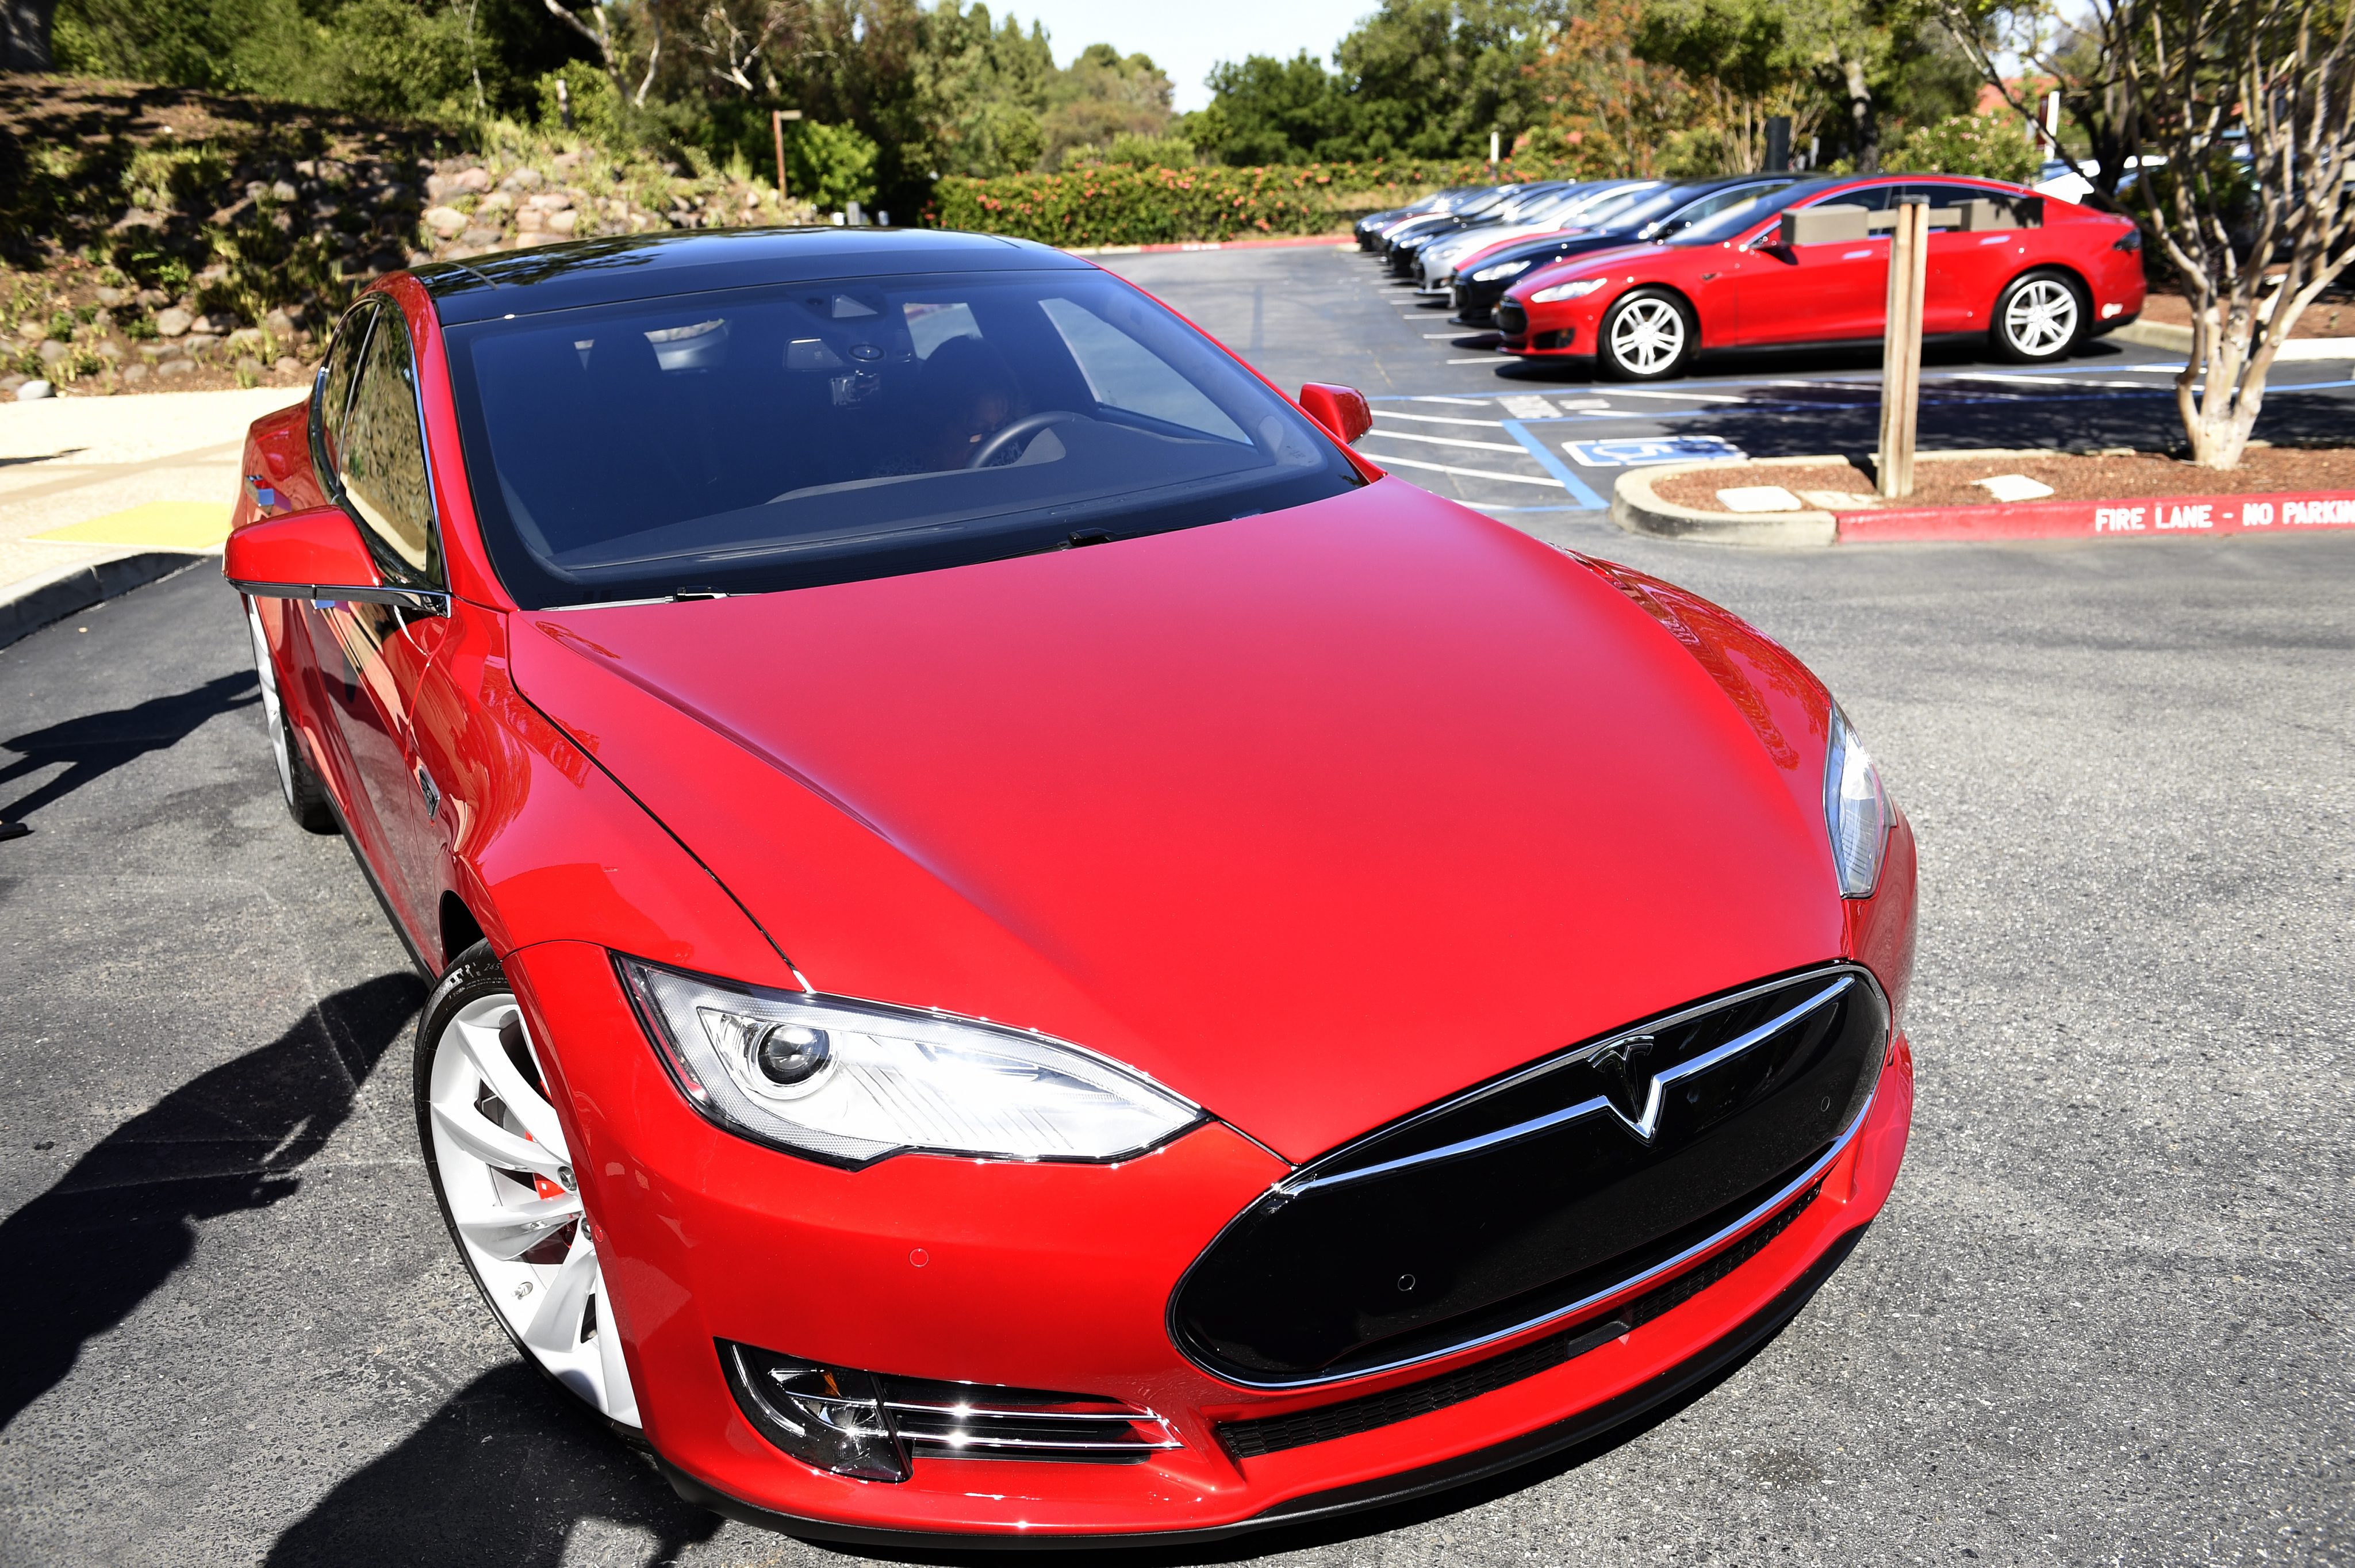 De term 'Autopilot' die autofabrikant Tesla hanteert voor de software waarmee bestuurders geassisteerd kunnen rijden is mogelijk verwarrend voor automobilisten. De Rijksdienst voor het Wegverkeer (RDW) bespreekt de term dinsdag intern. Dat zei een woordvoerder maandagavond.